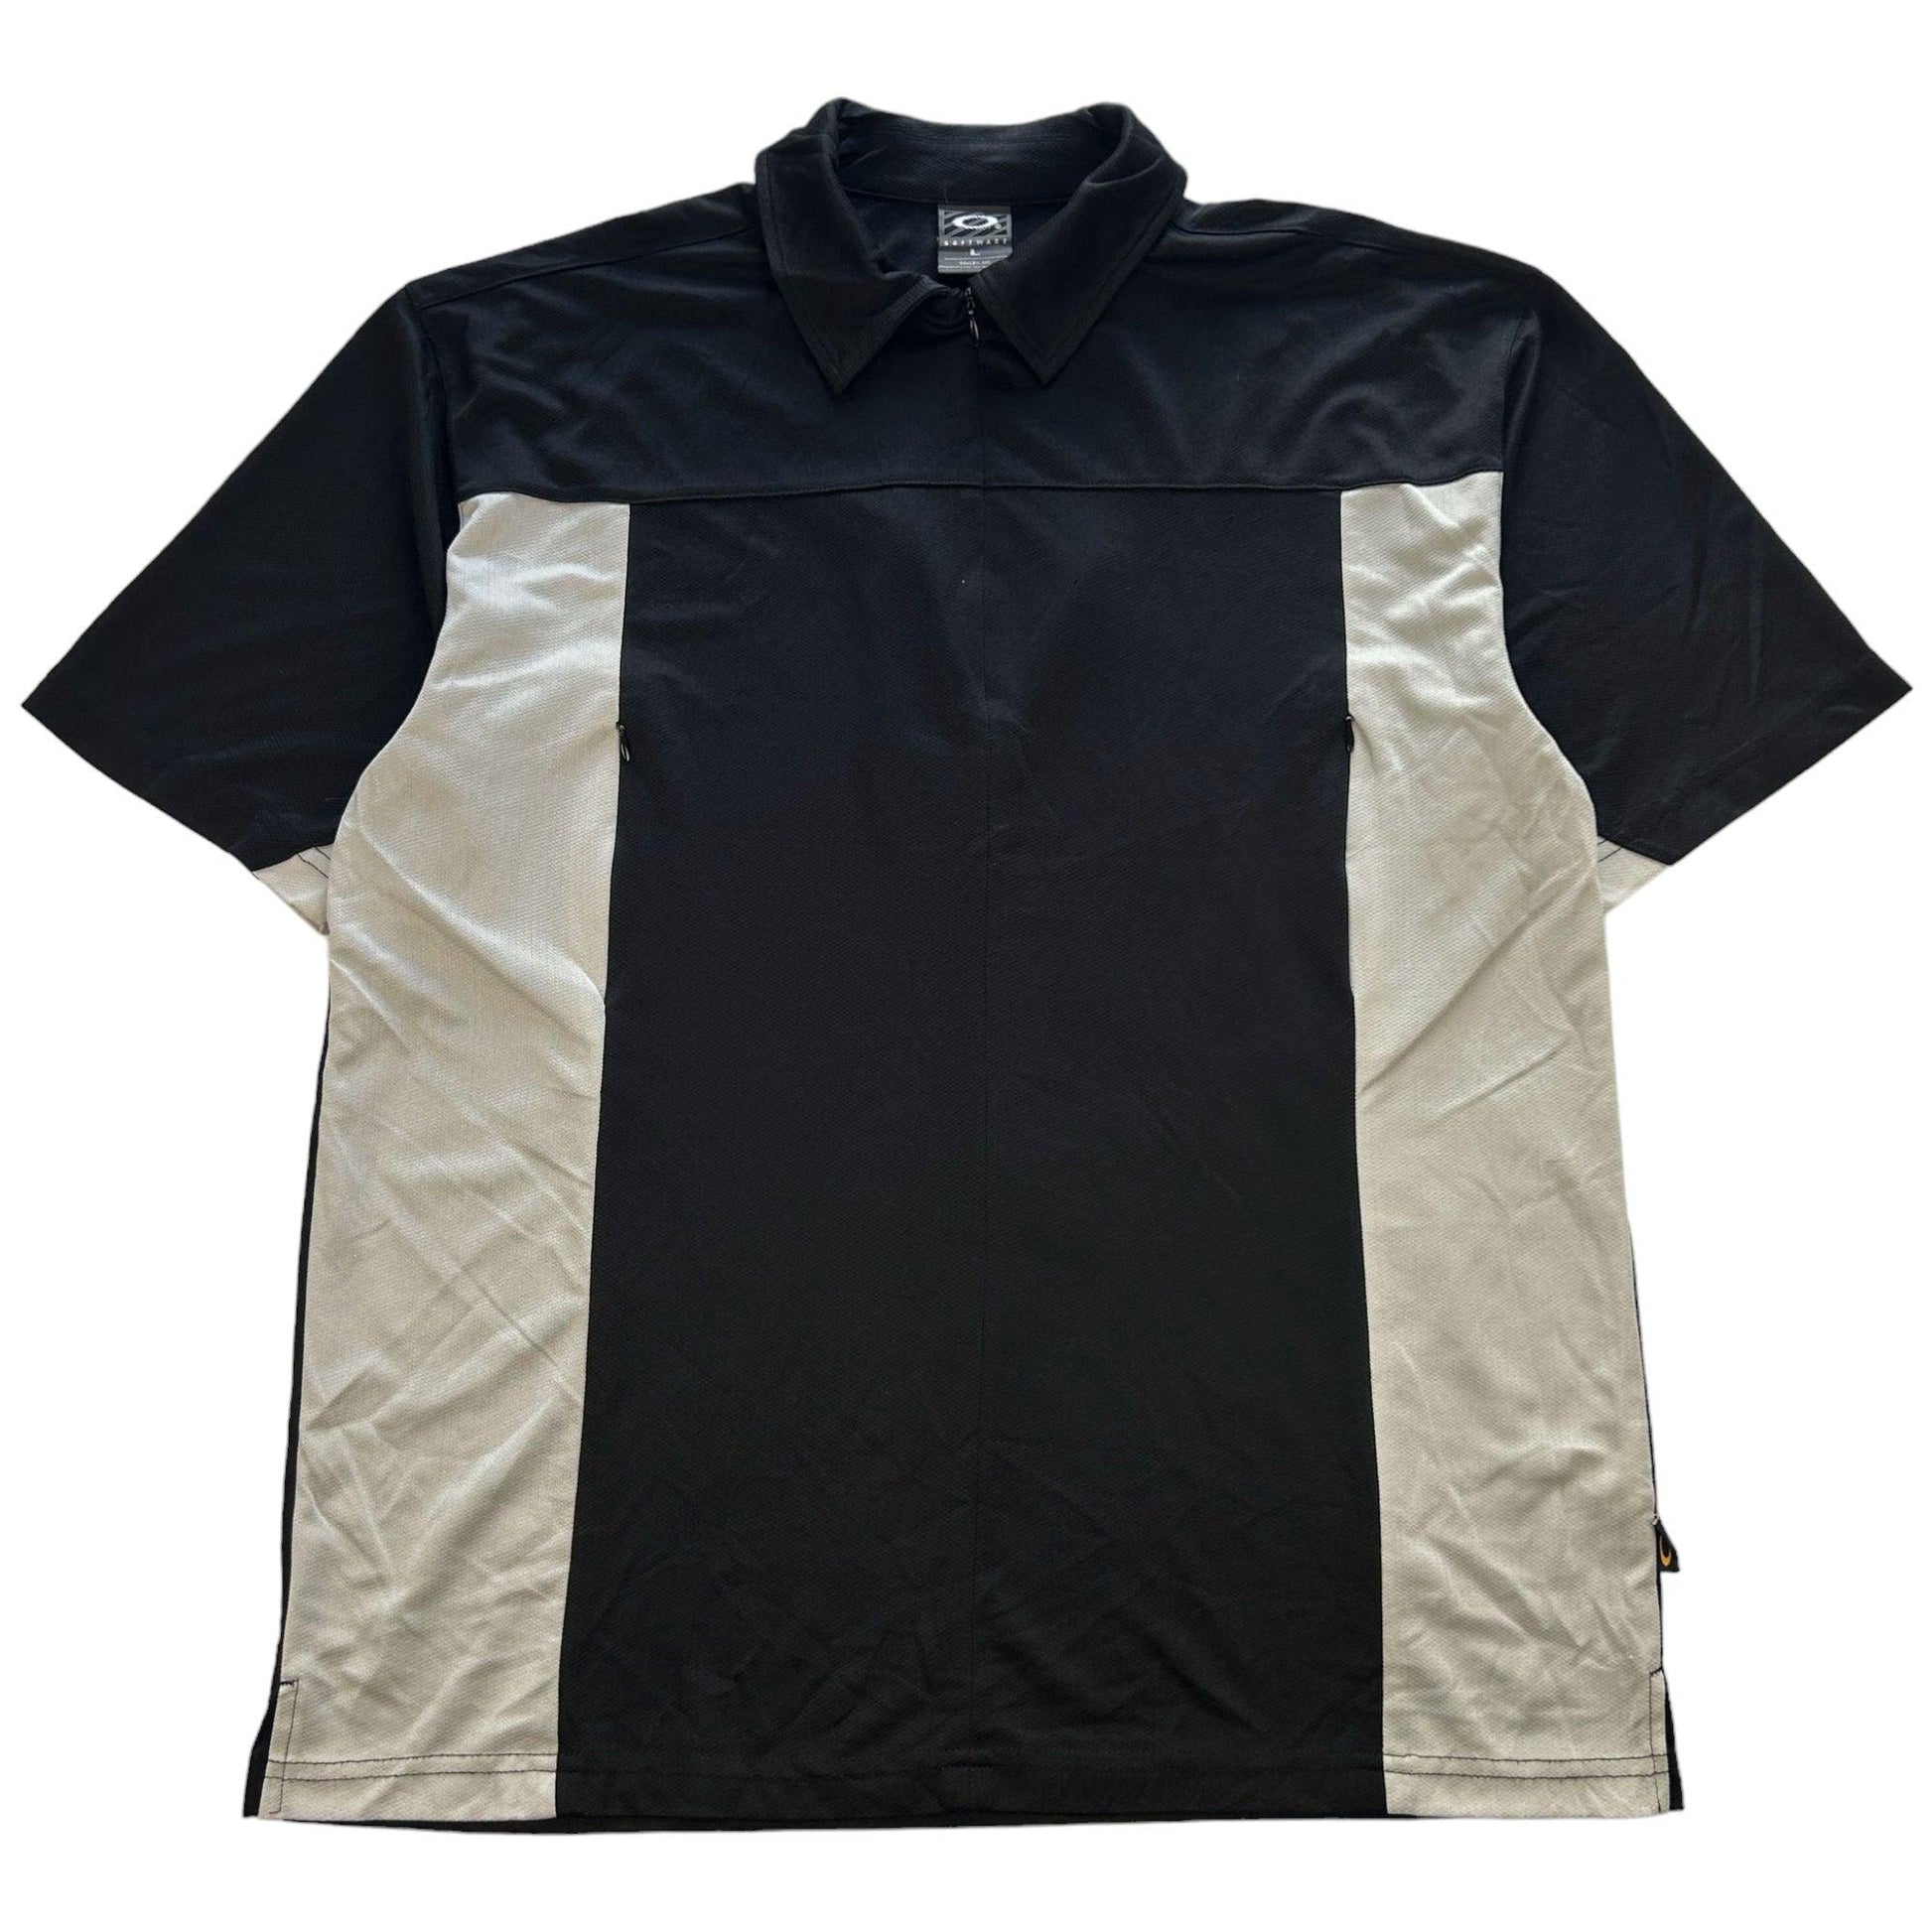 Vintage Oakley Software Q Zip T Shirt Size L - Known Source